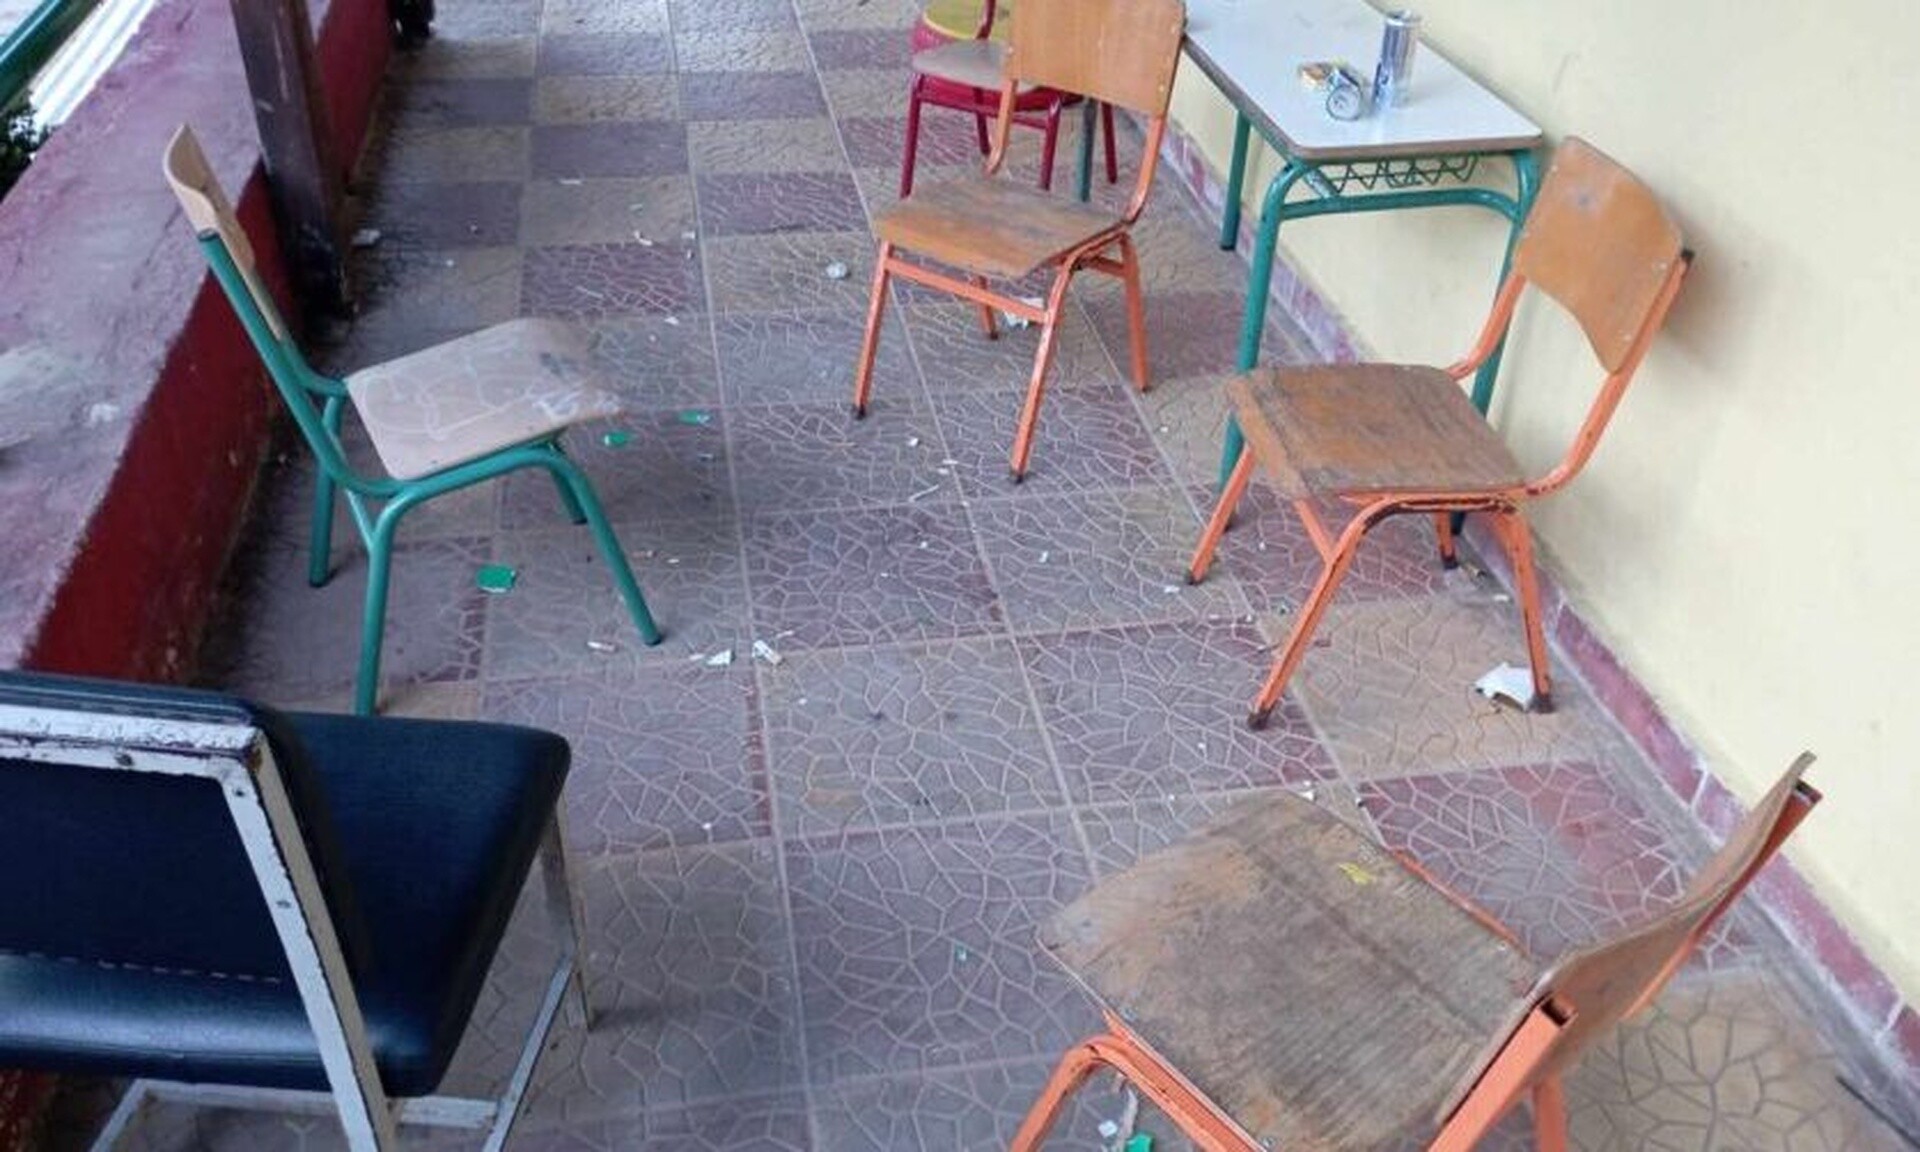 Βόλος: Κάμερες κατέγραψαν βανδαλισμό σε σχολείο - Οι καταστροφές που προκάλεσαν